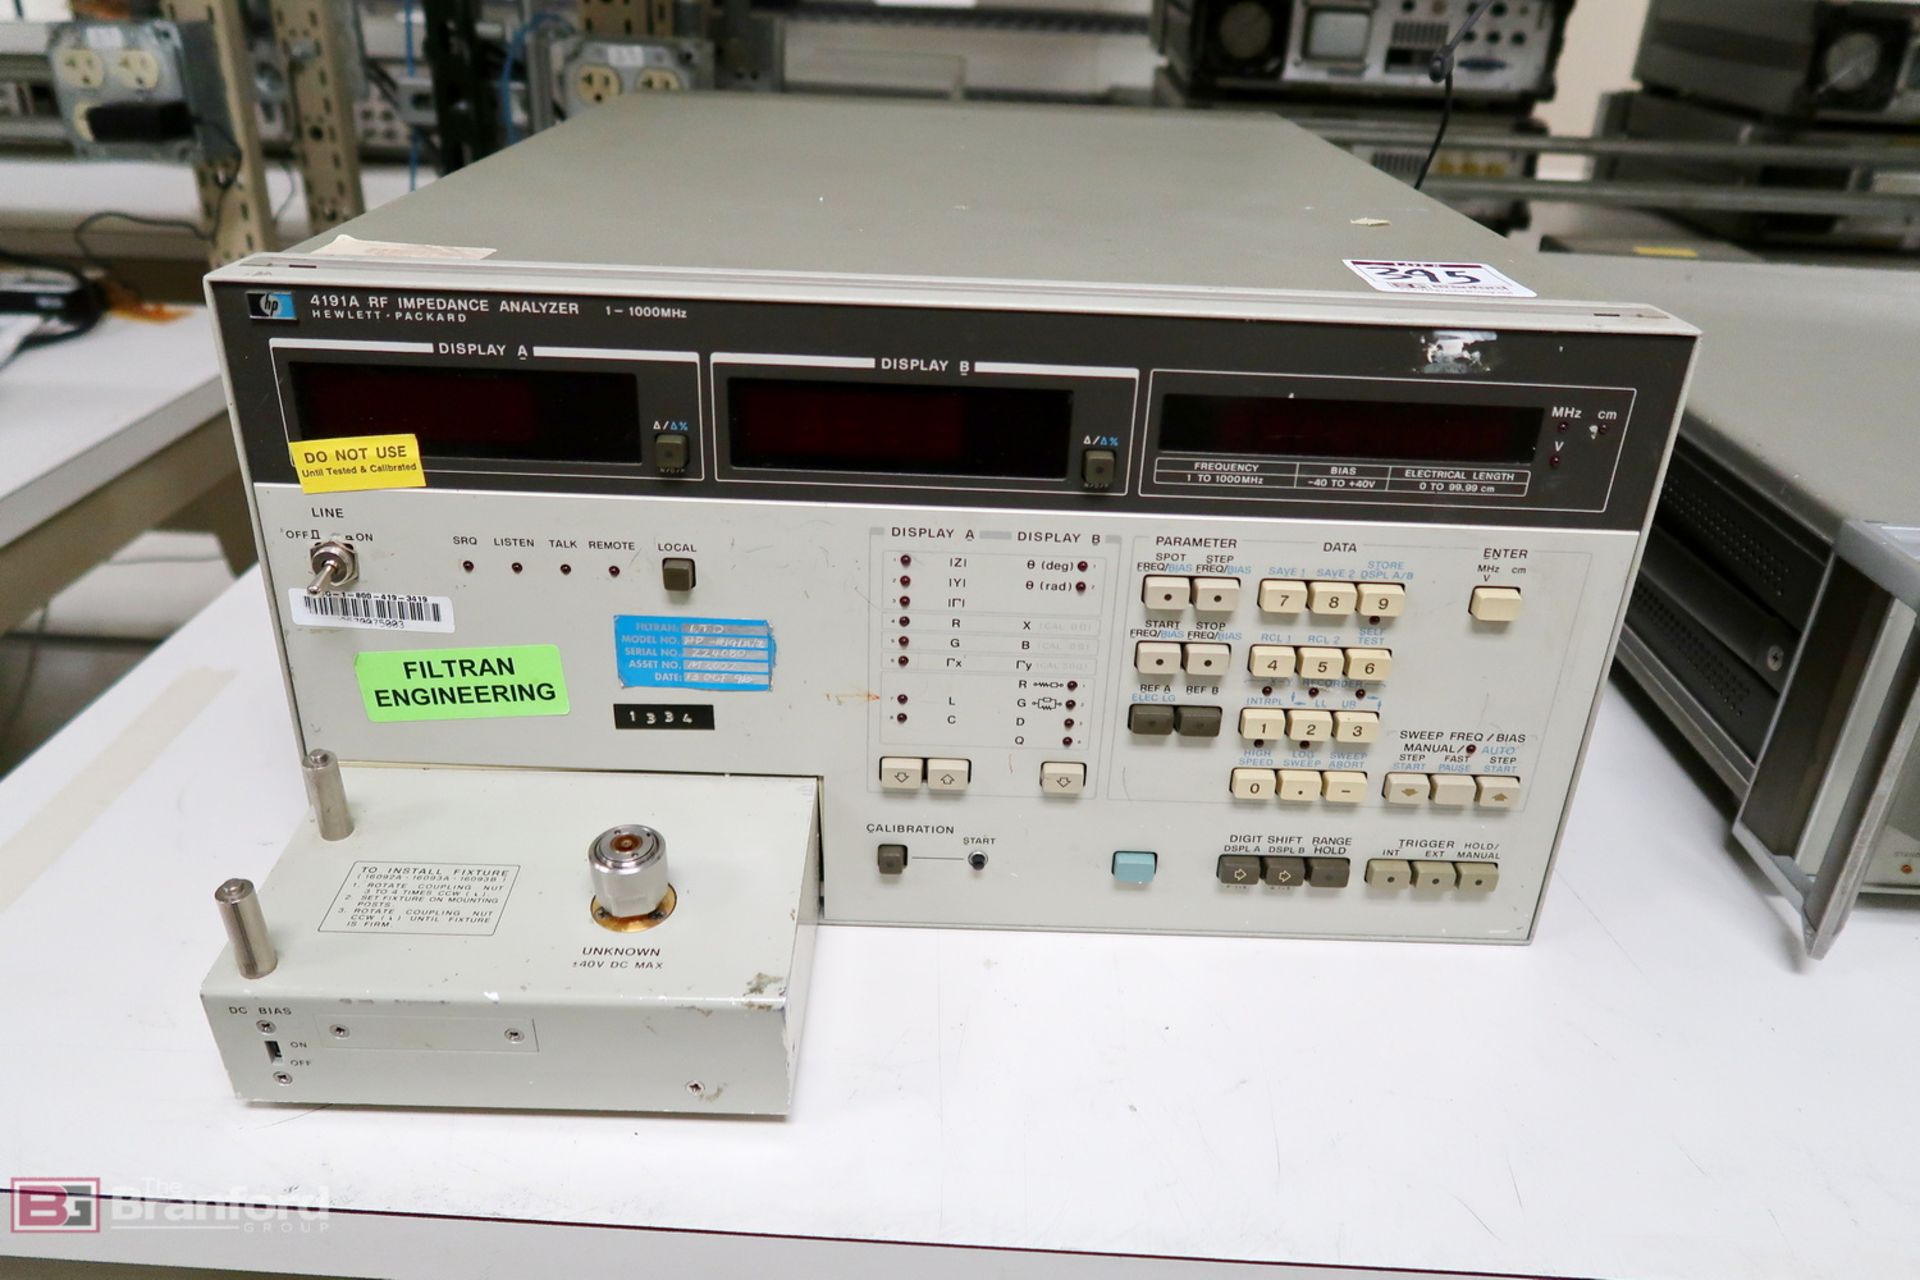 HP 4191A RF impedance analyzer